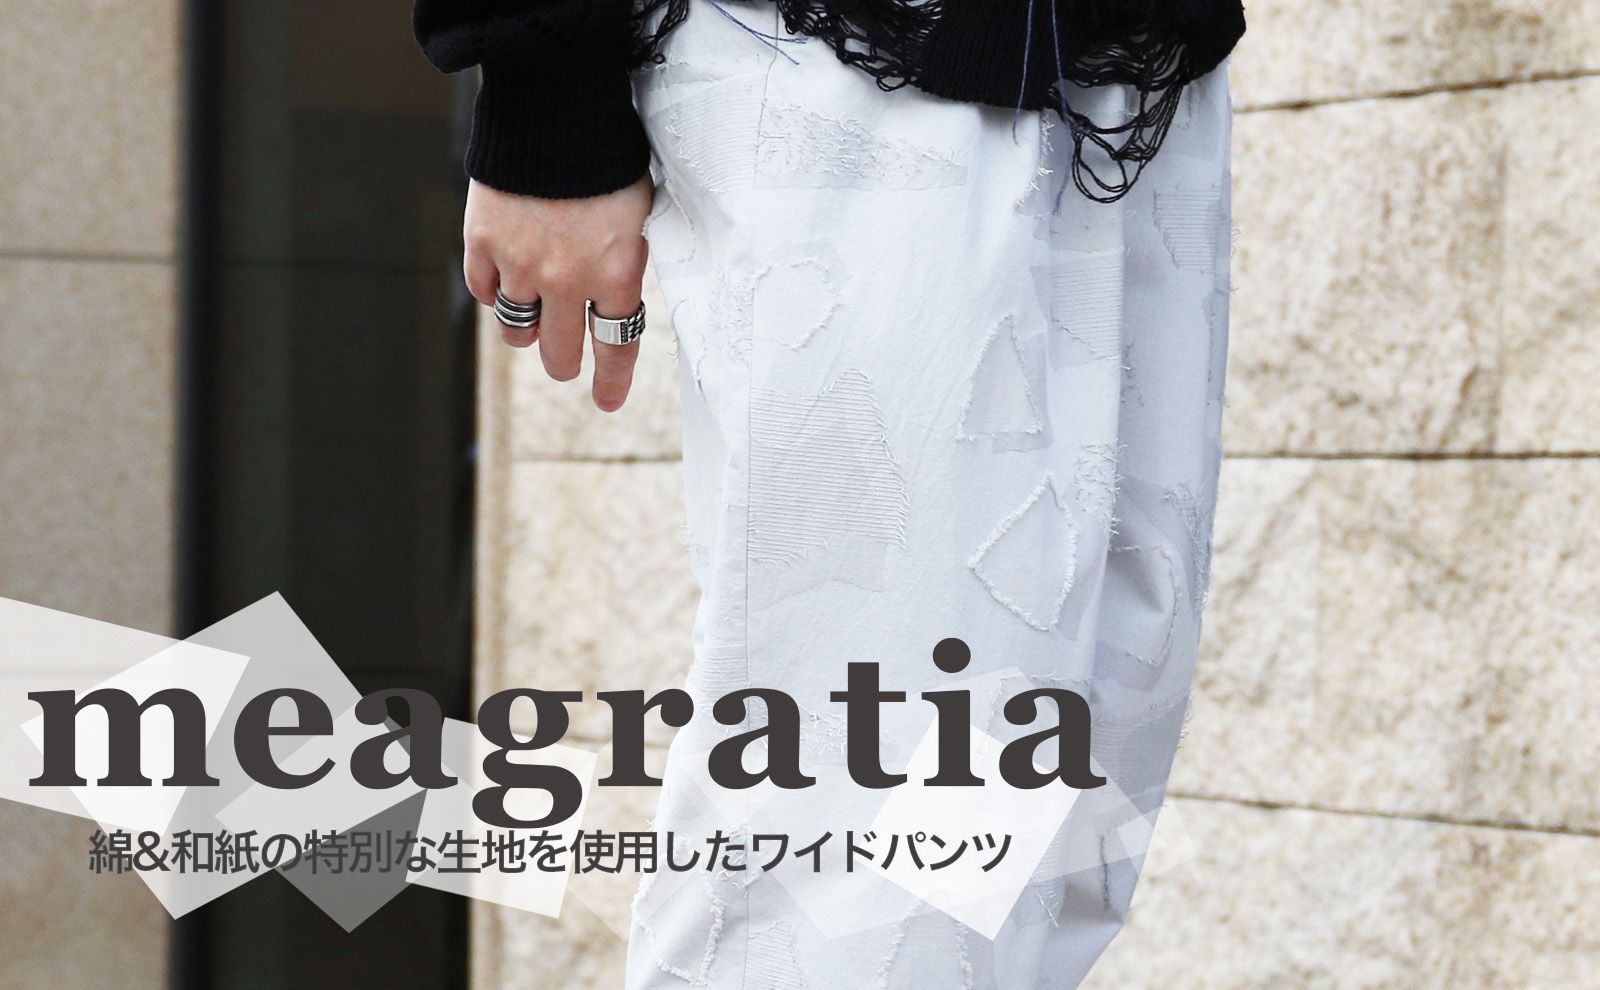 meagratia - メアグラーティア | 正規通販店 laid-back